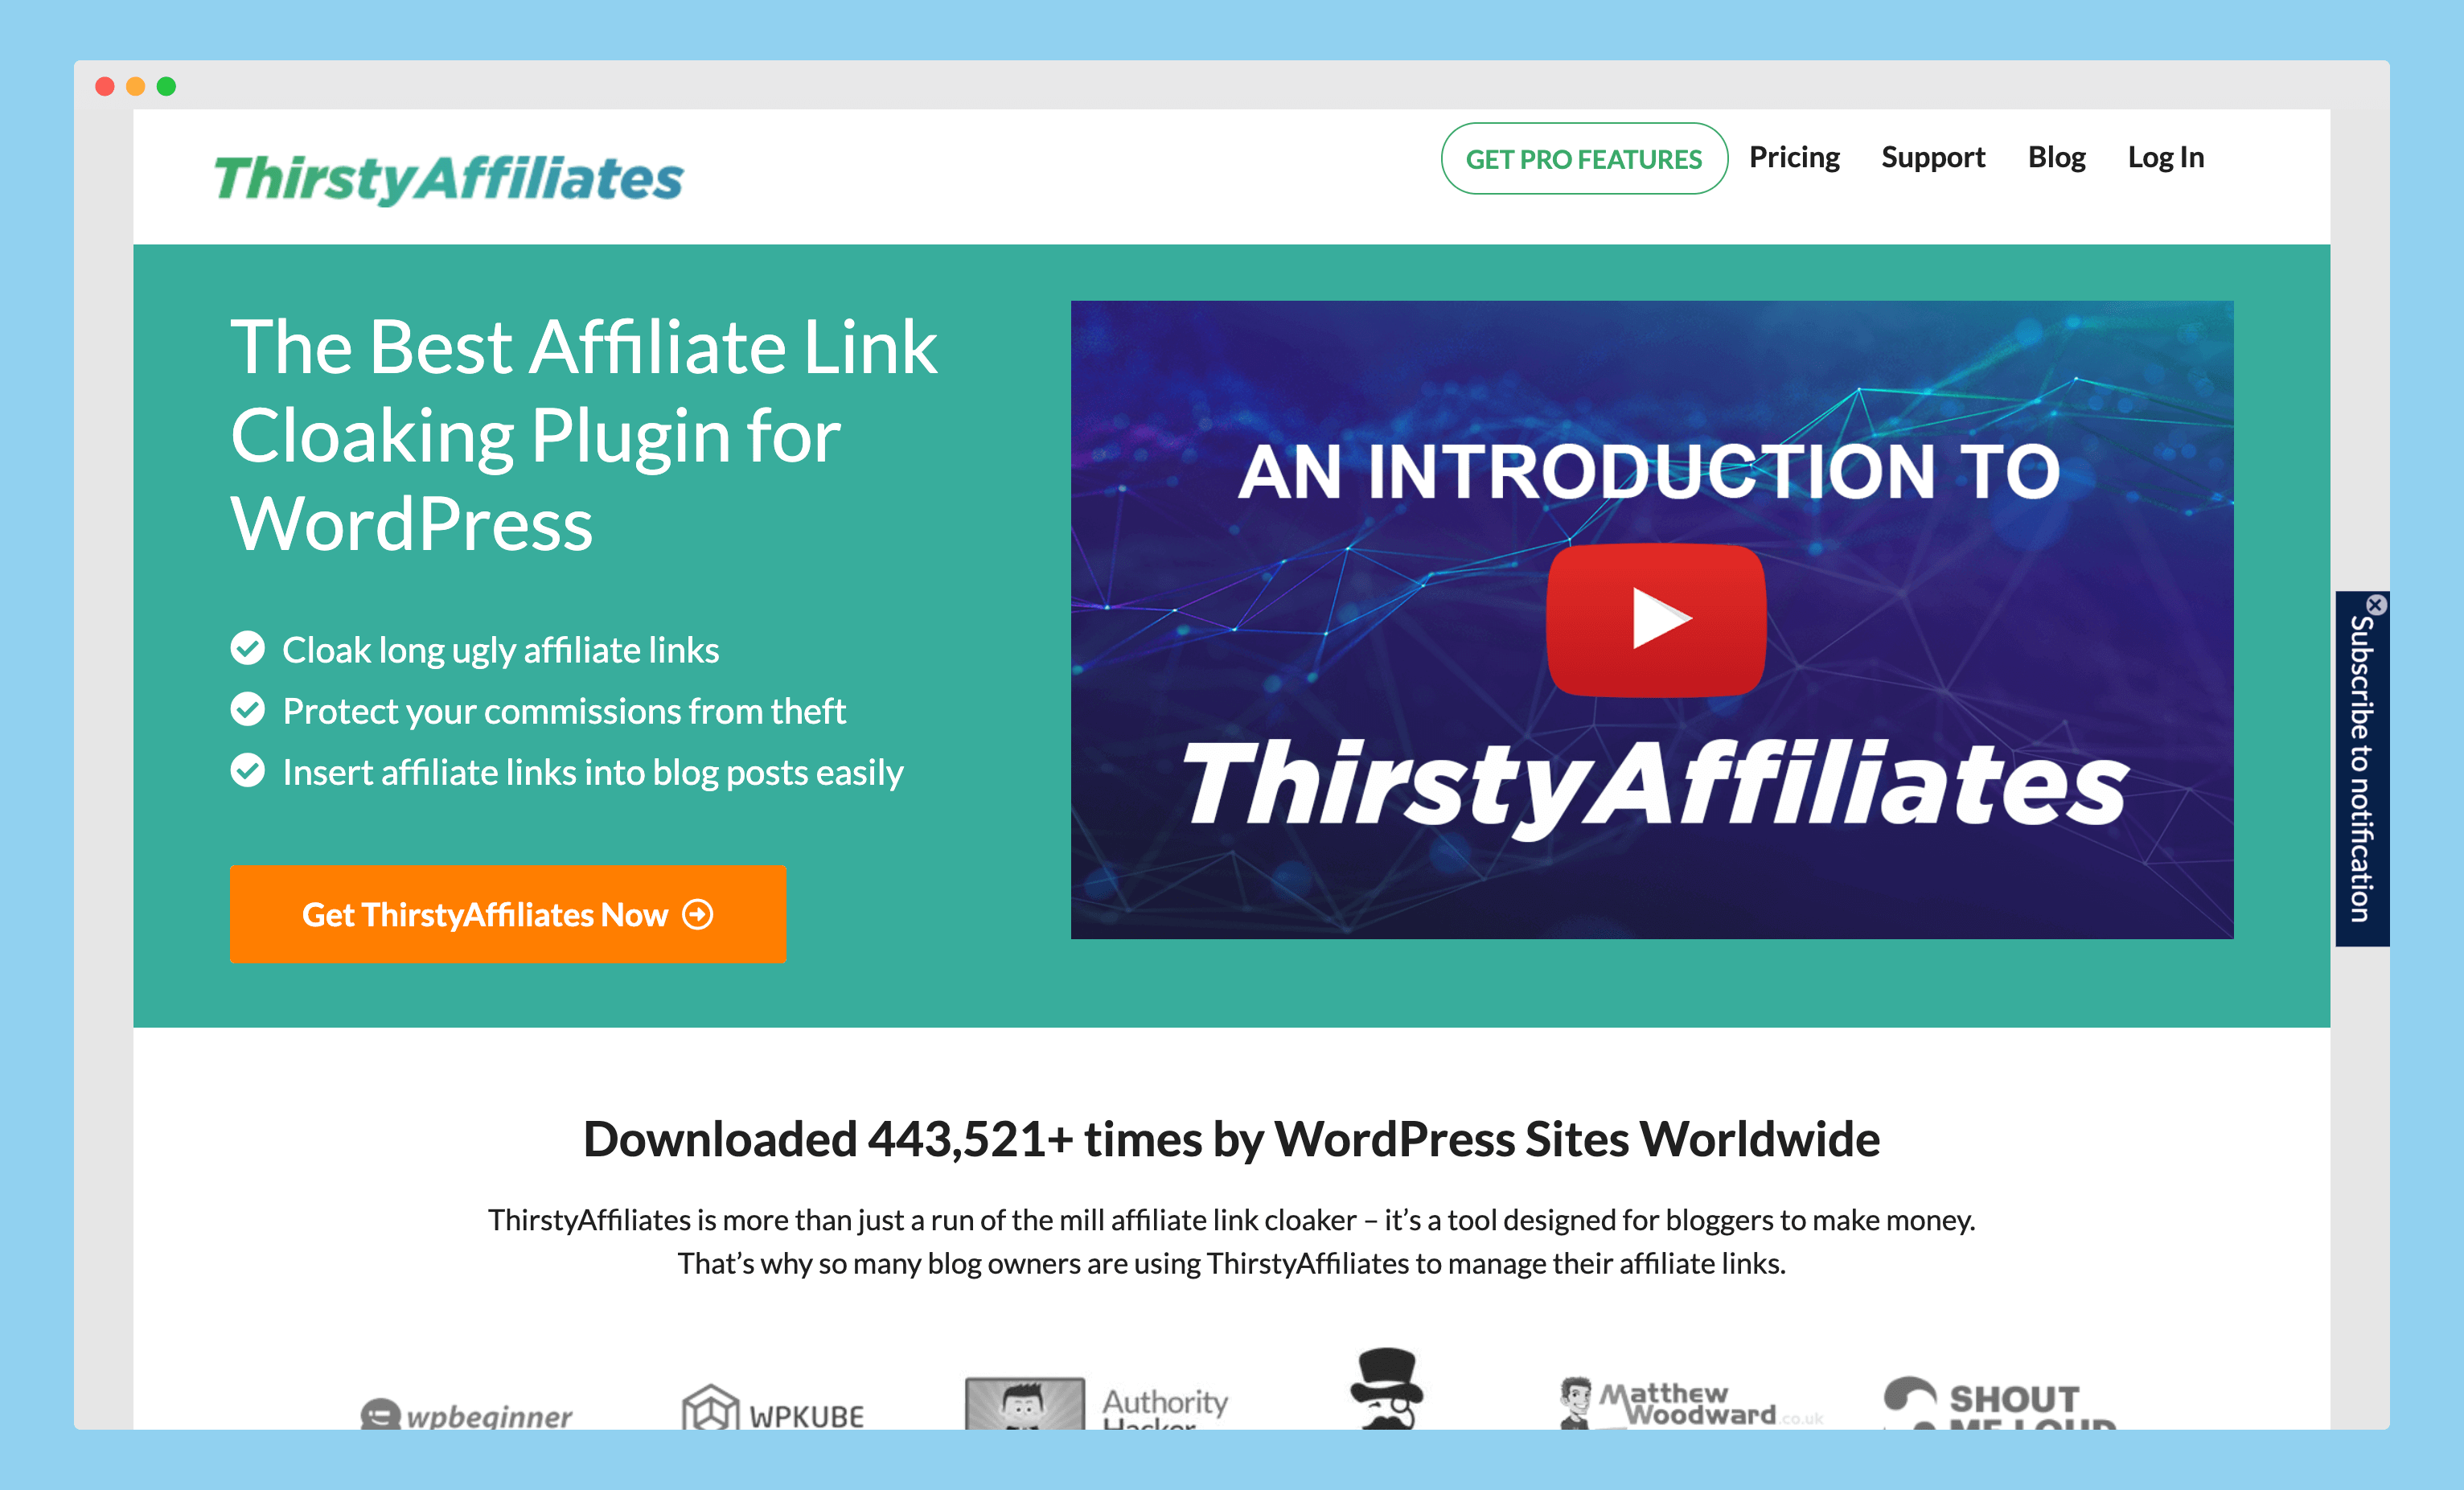 amazon affiliate plugin, amazon affiliate wordpress plugins, amazon affiliate wp plugin, best amazon affiliate plugins, best amazon affiliate wordpress plugins